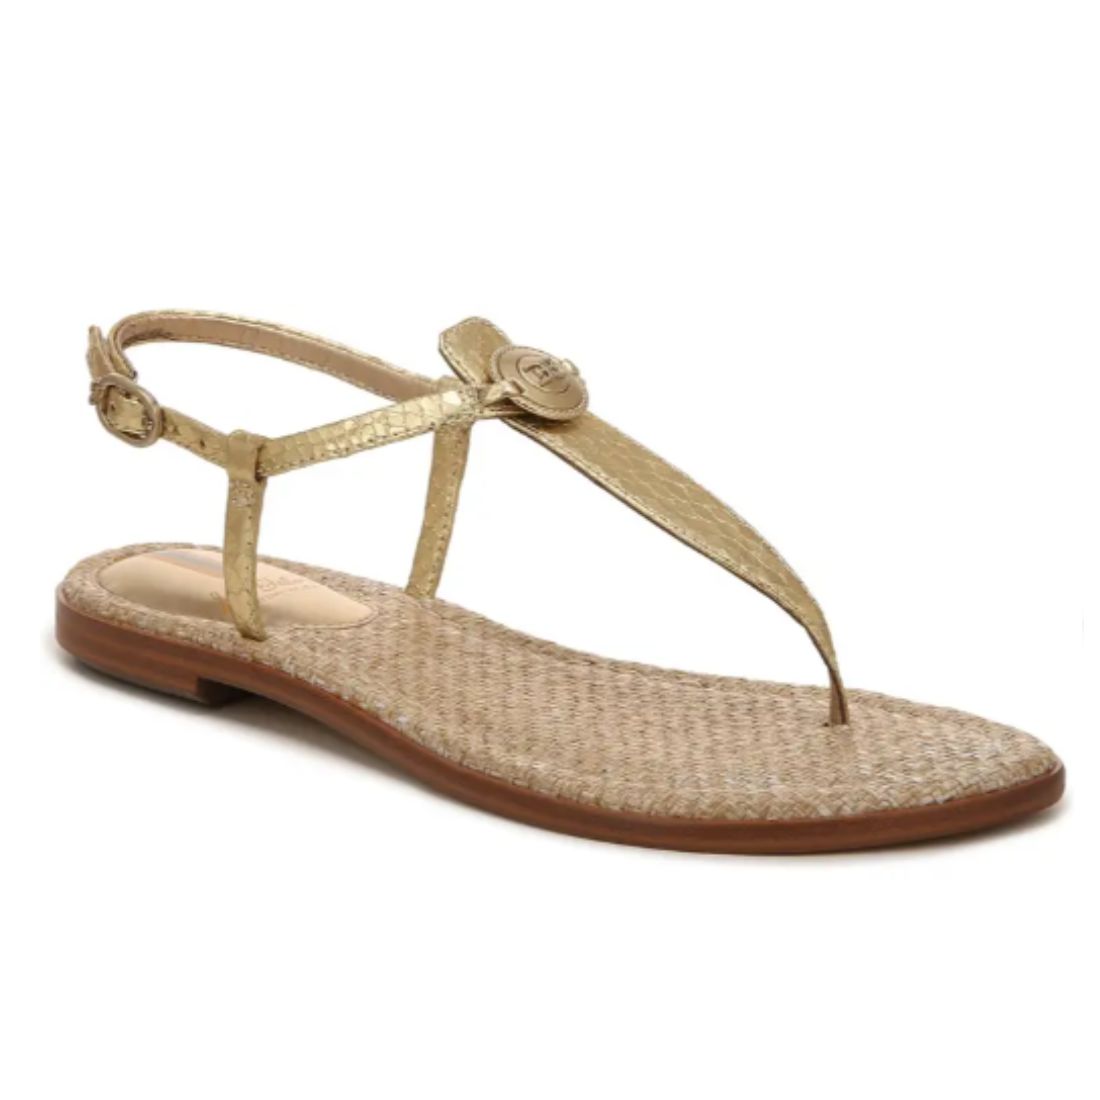 Shop Sandals | Cotton Island Women's Clothing Boutique